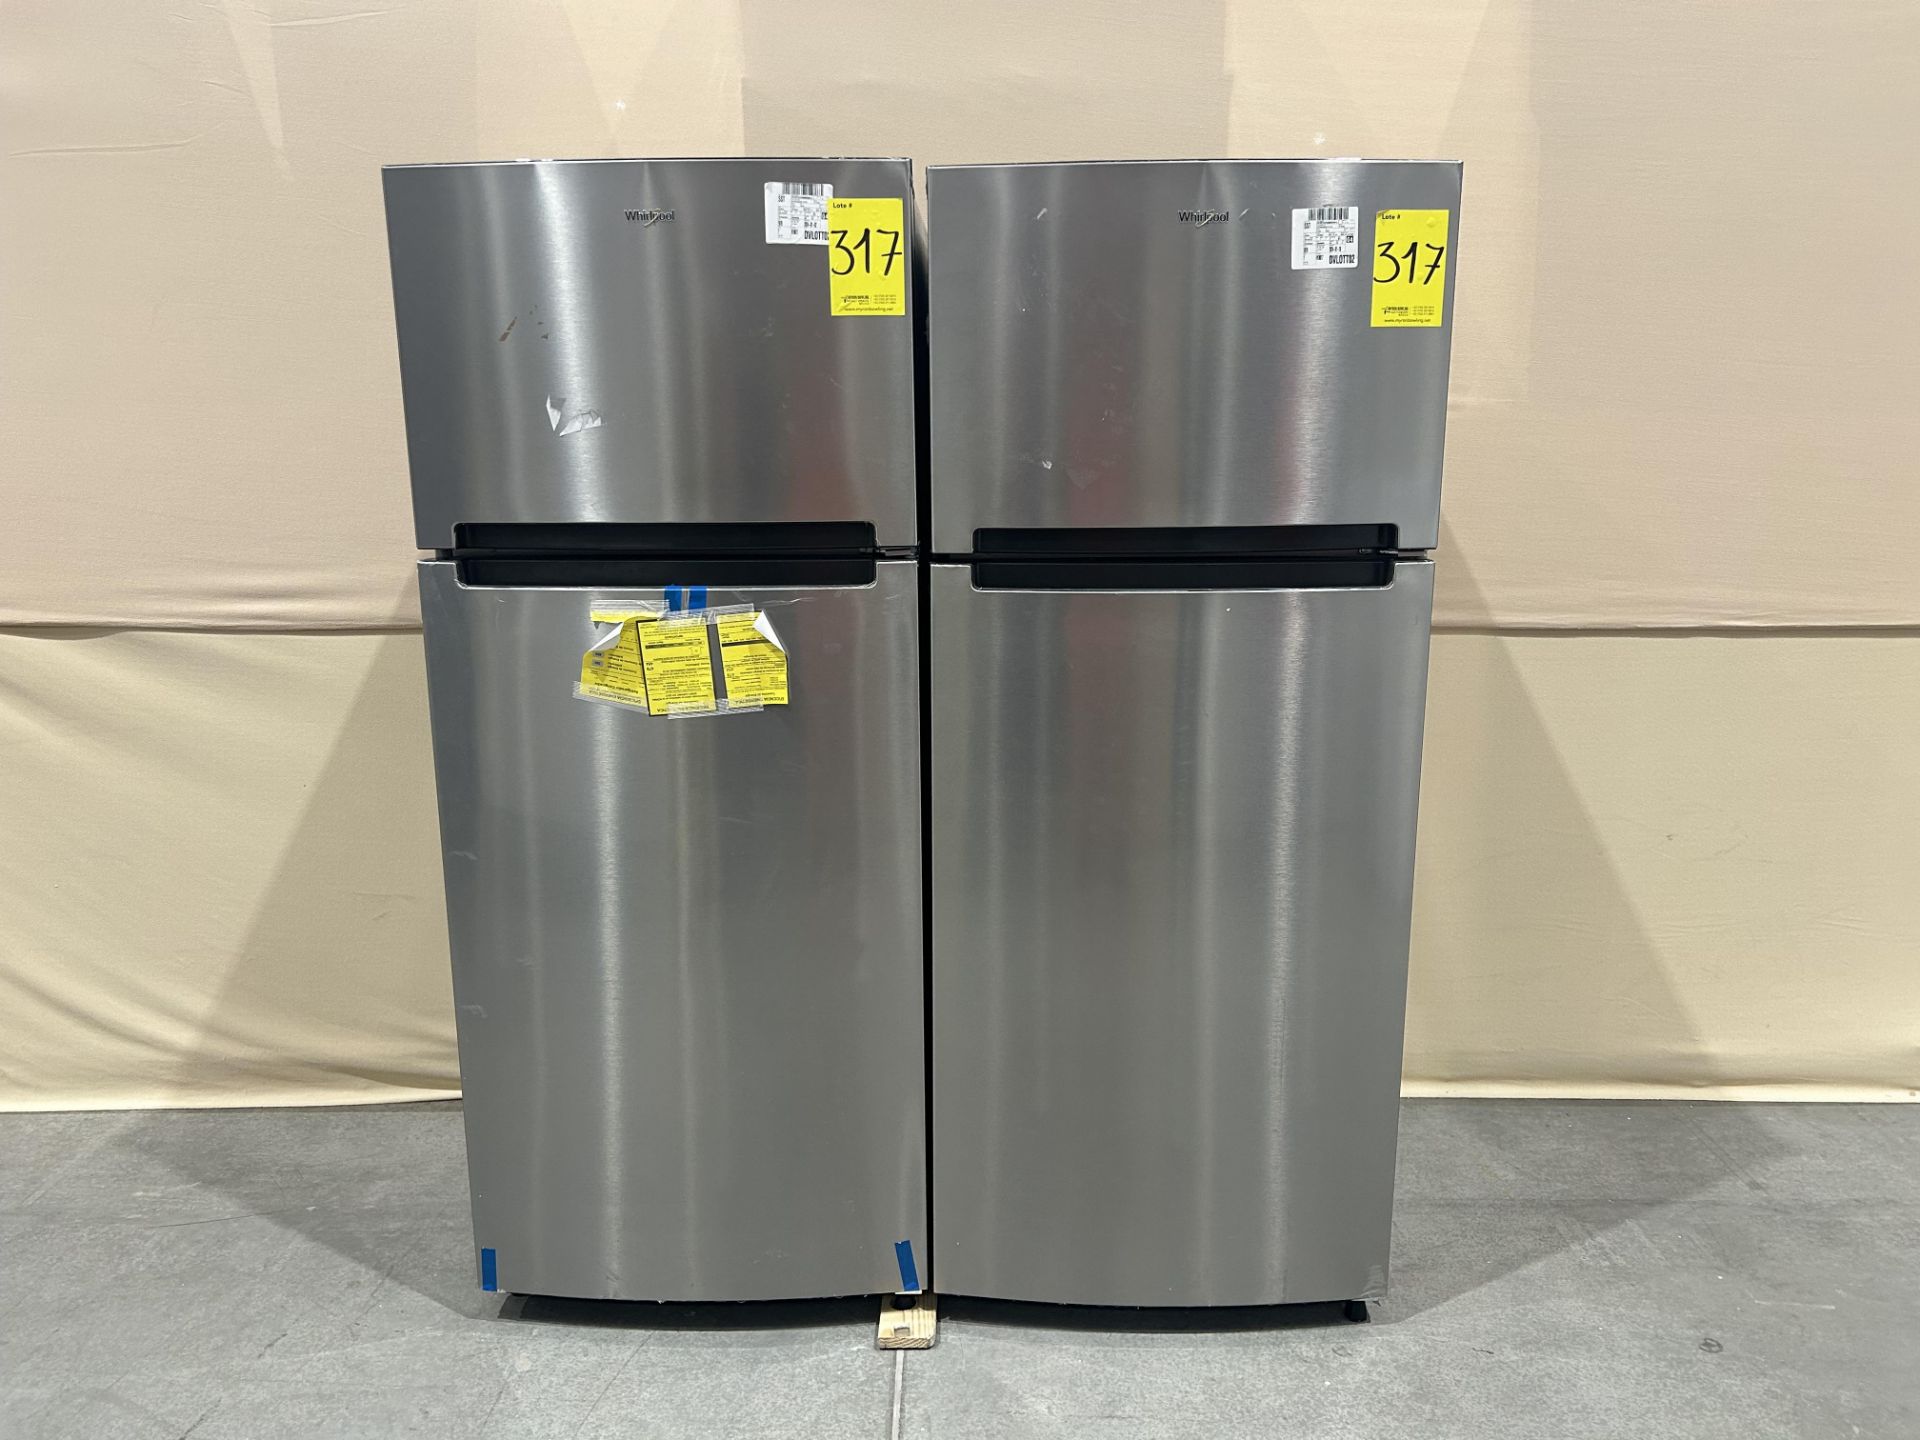 Lote de 2 refrigeradores contiene: 1 refrigerador Marca WHIRLPOOL, Modelo WT1818A, Serie 535500, Co